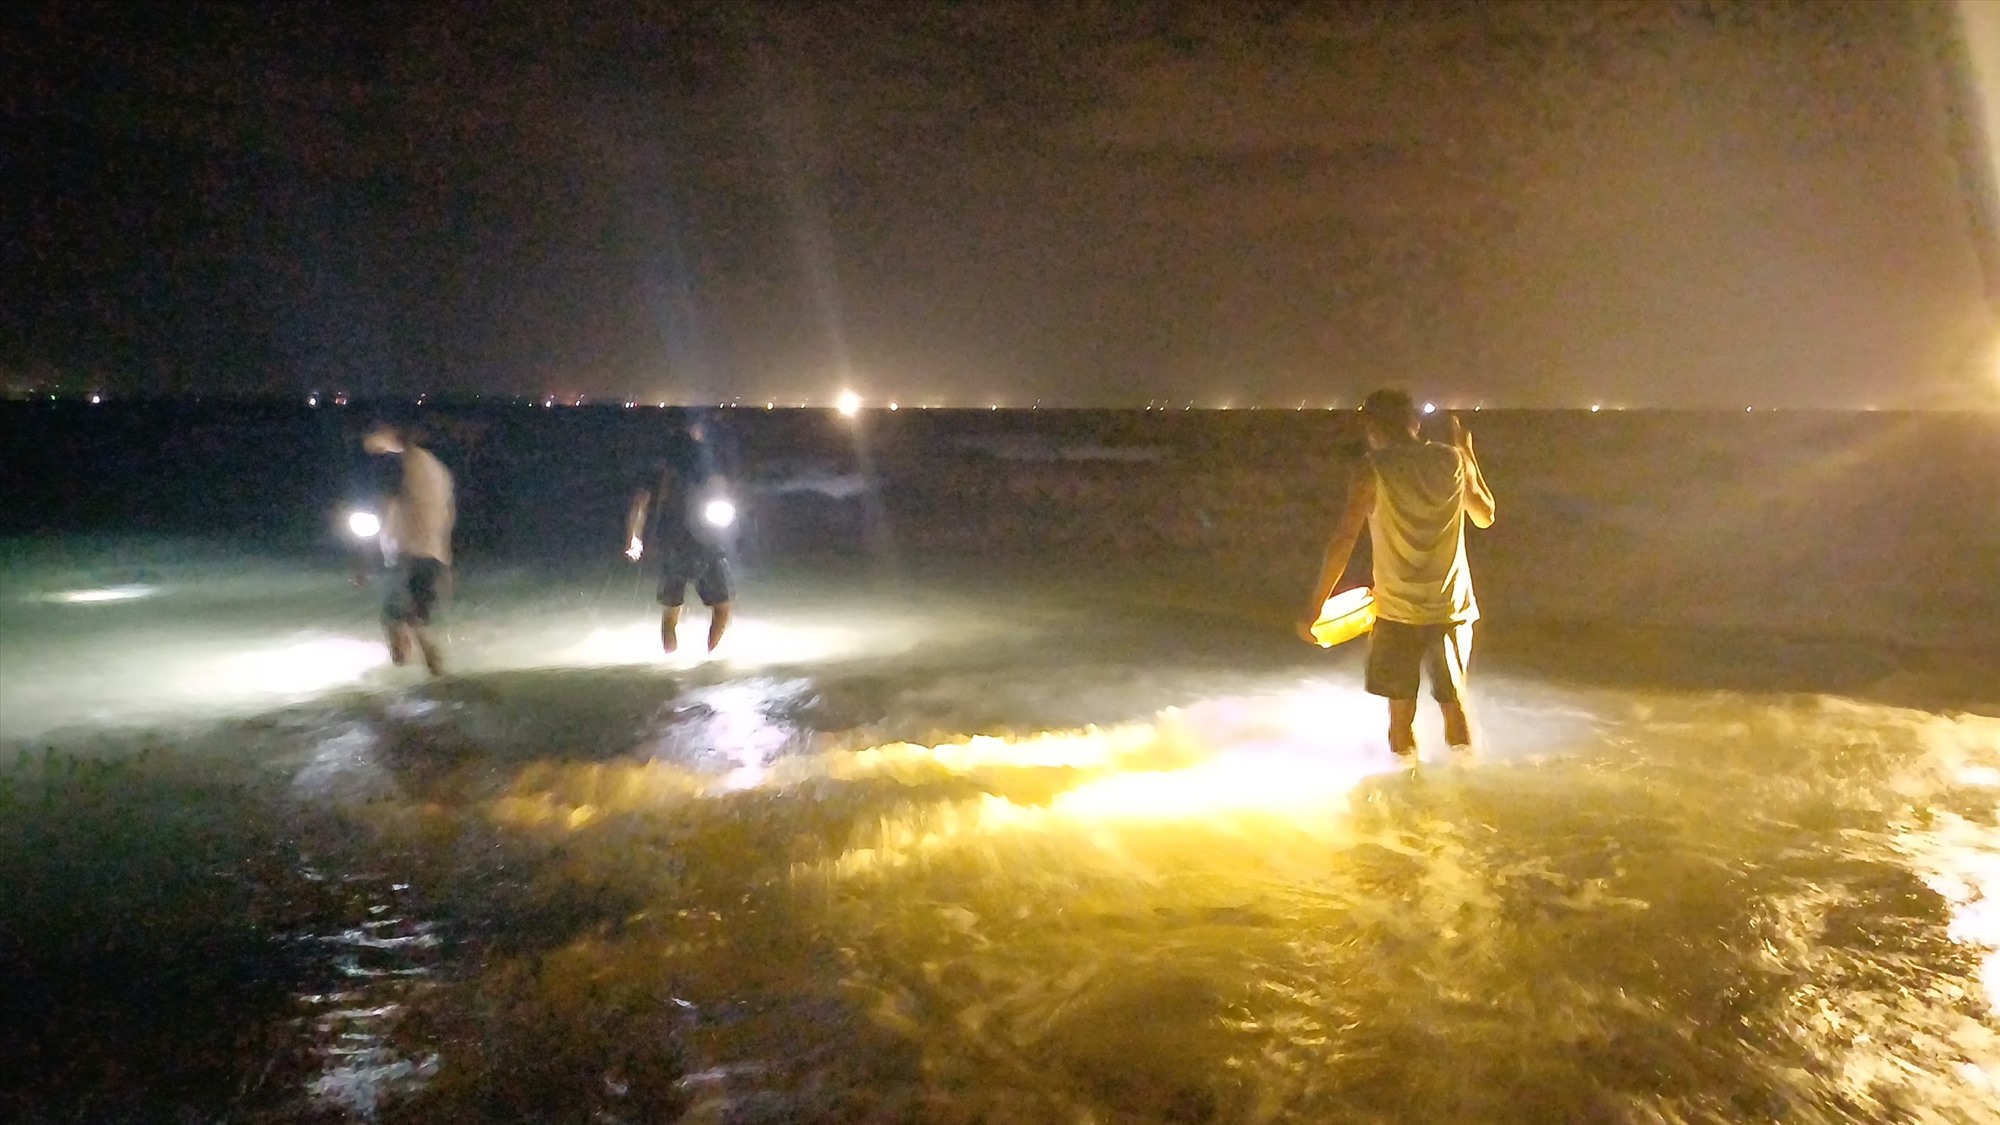 Đổ xô rọi đèn pin xuống một vùng biển ở Quảng Nam bắt con vật cầm lên nó cuốn tay nhồn nhột - Ảnh 1.